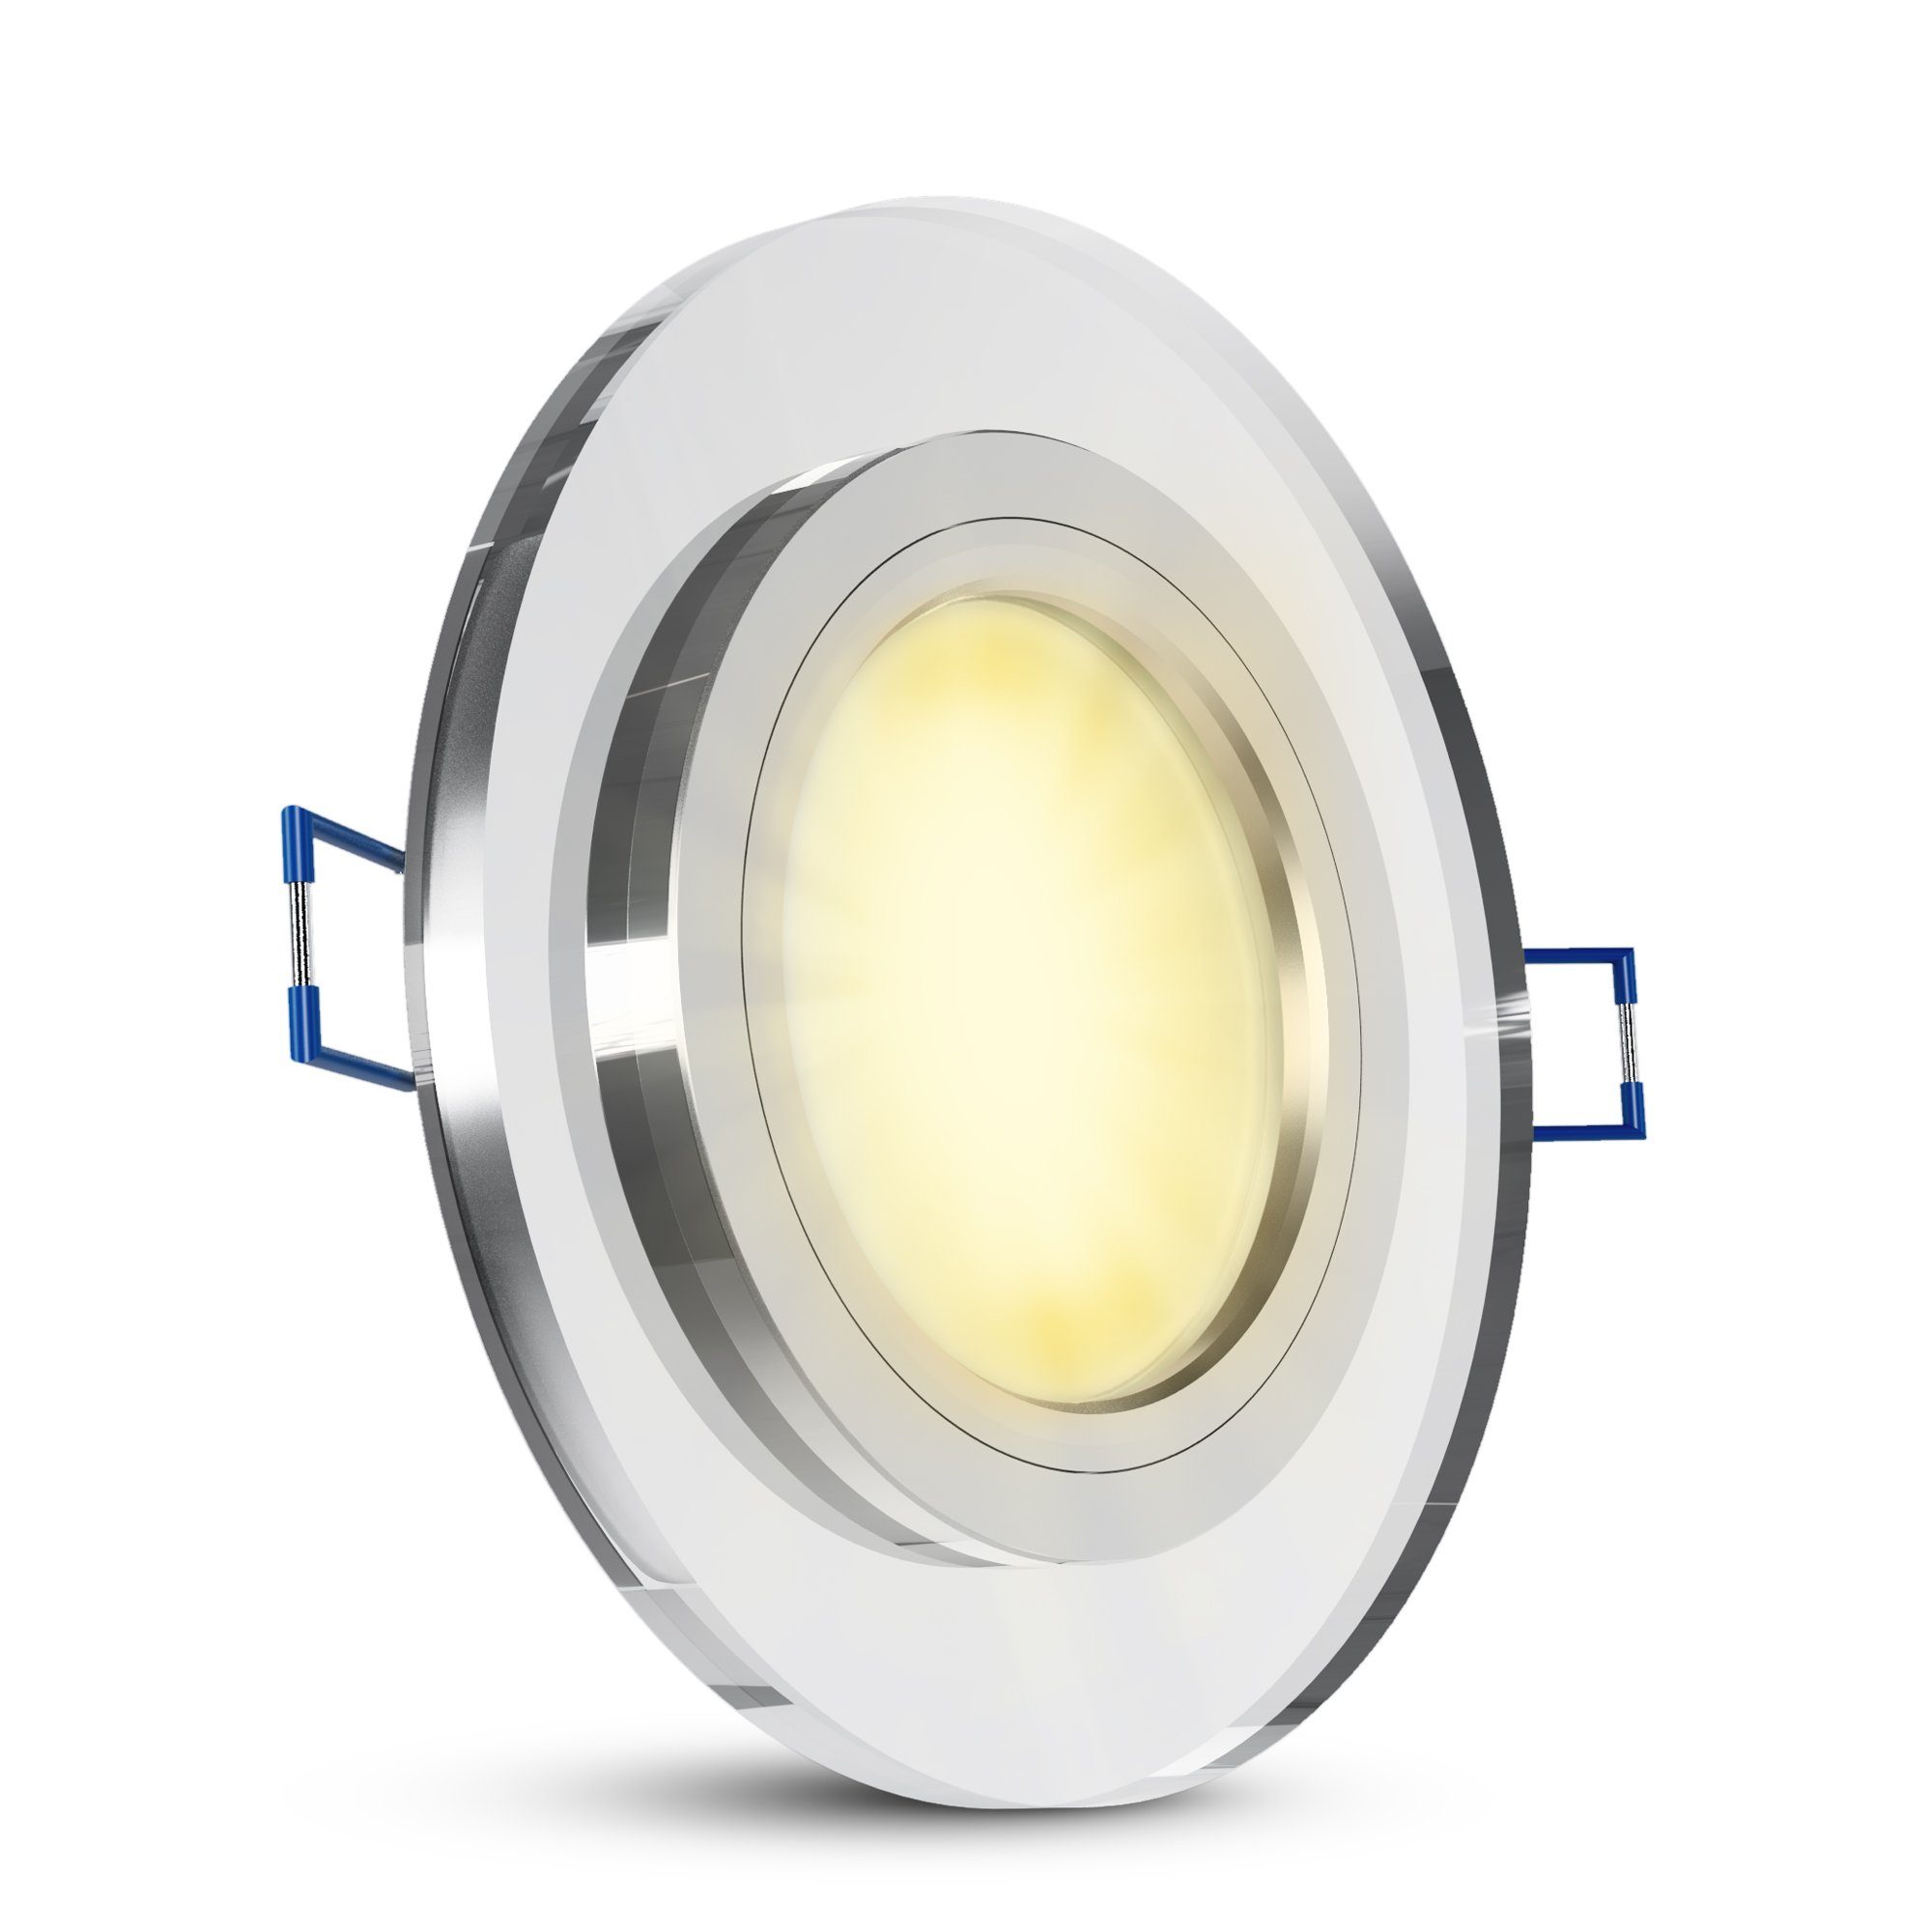 SSC-LUXon LED Einbaustrahler Flache Design Glas LED Einbauleuchte in rund klar mit LED-Modul, Warmweiß